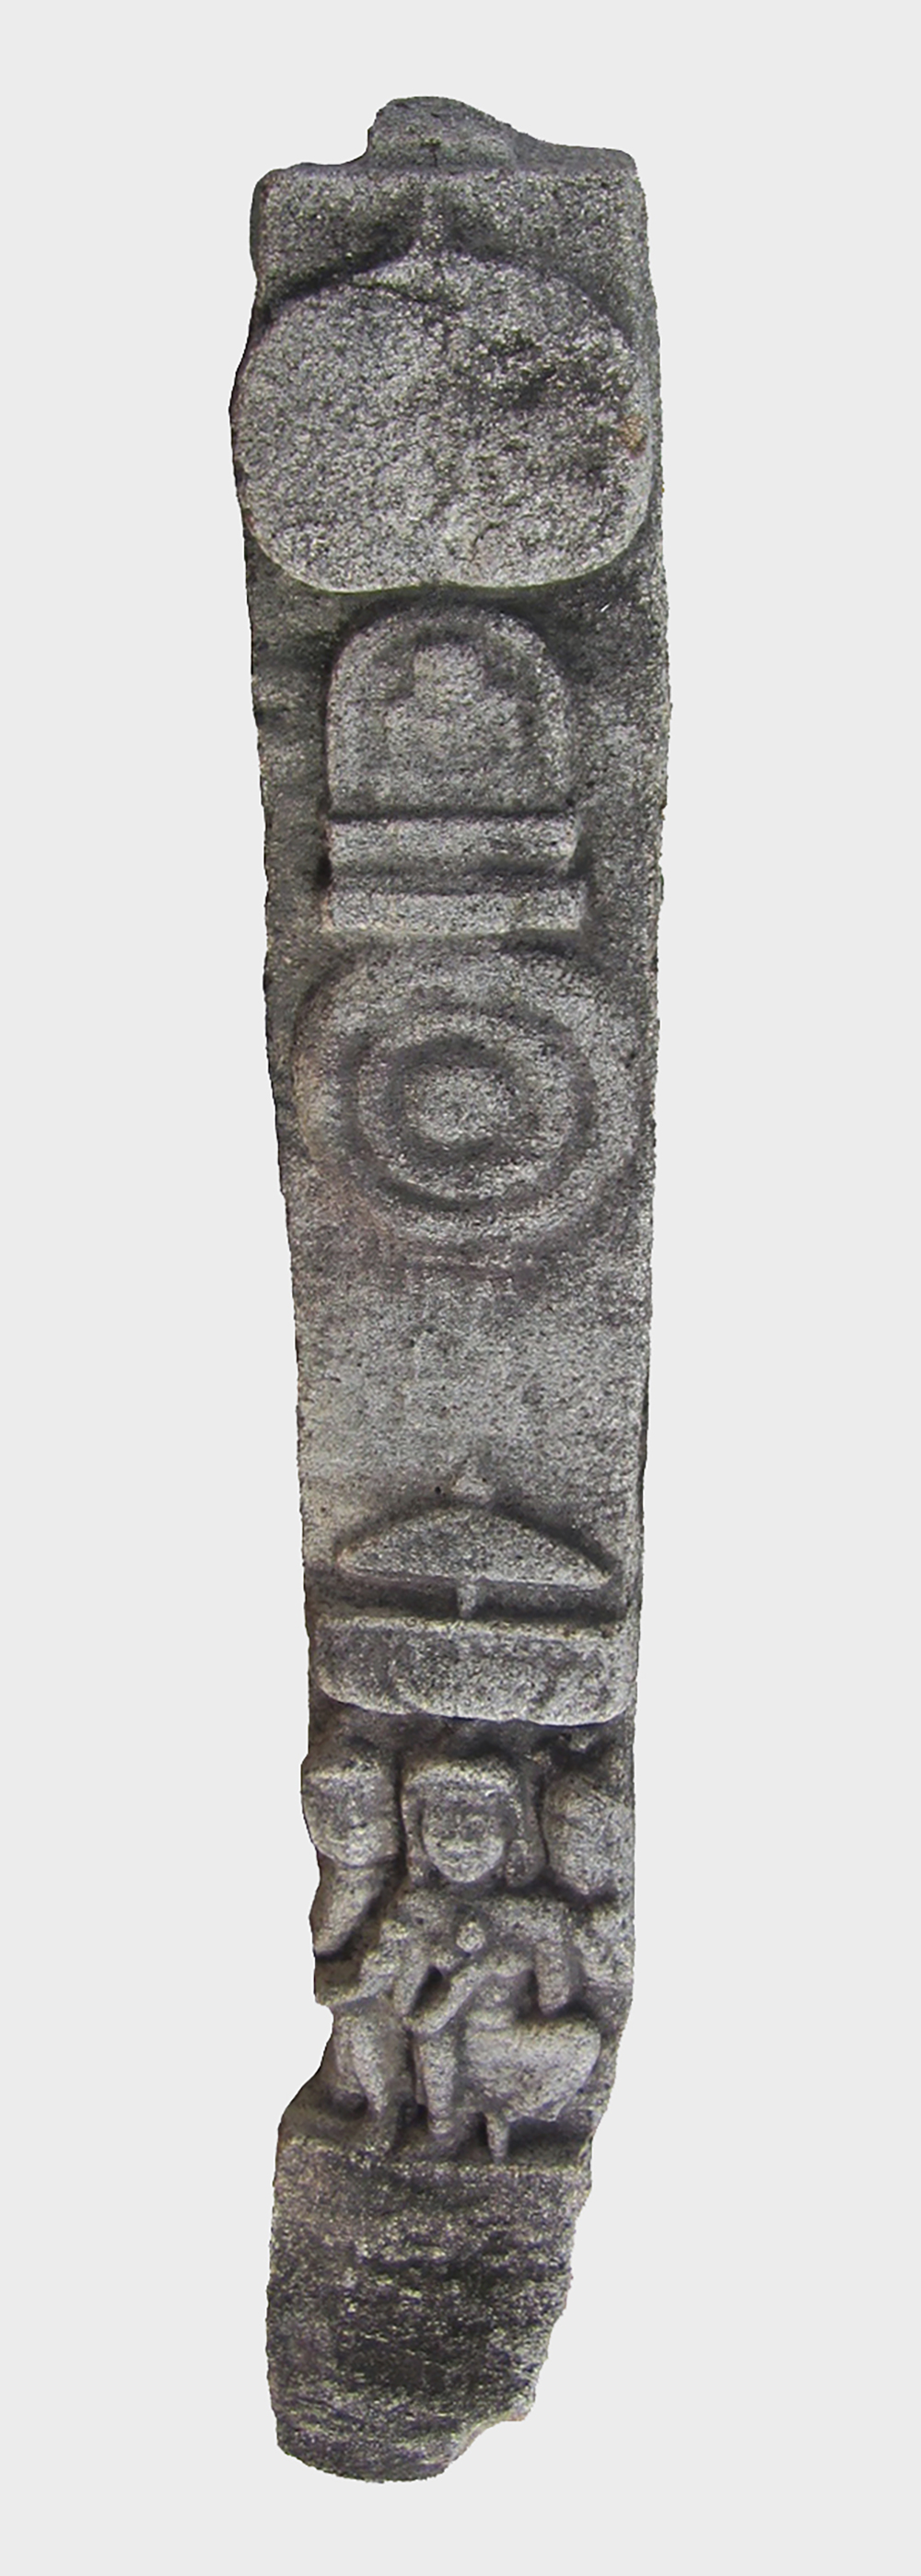 Giải mã tác phẩm điêu khắc độc đáo thể hiện đề tài Phật giáo thuộc văn hóa Óc Eo tại Bảo tàng An Giang